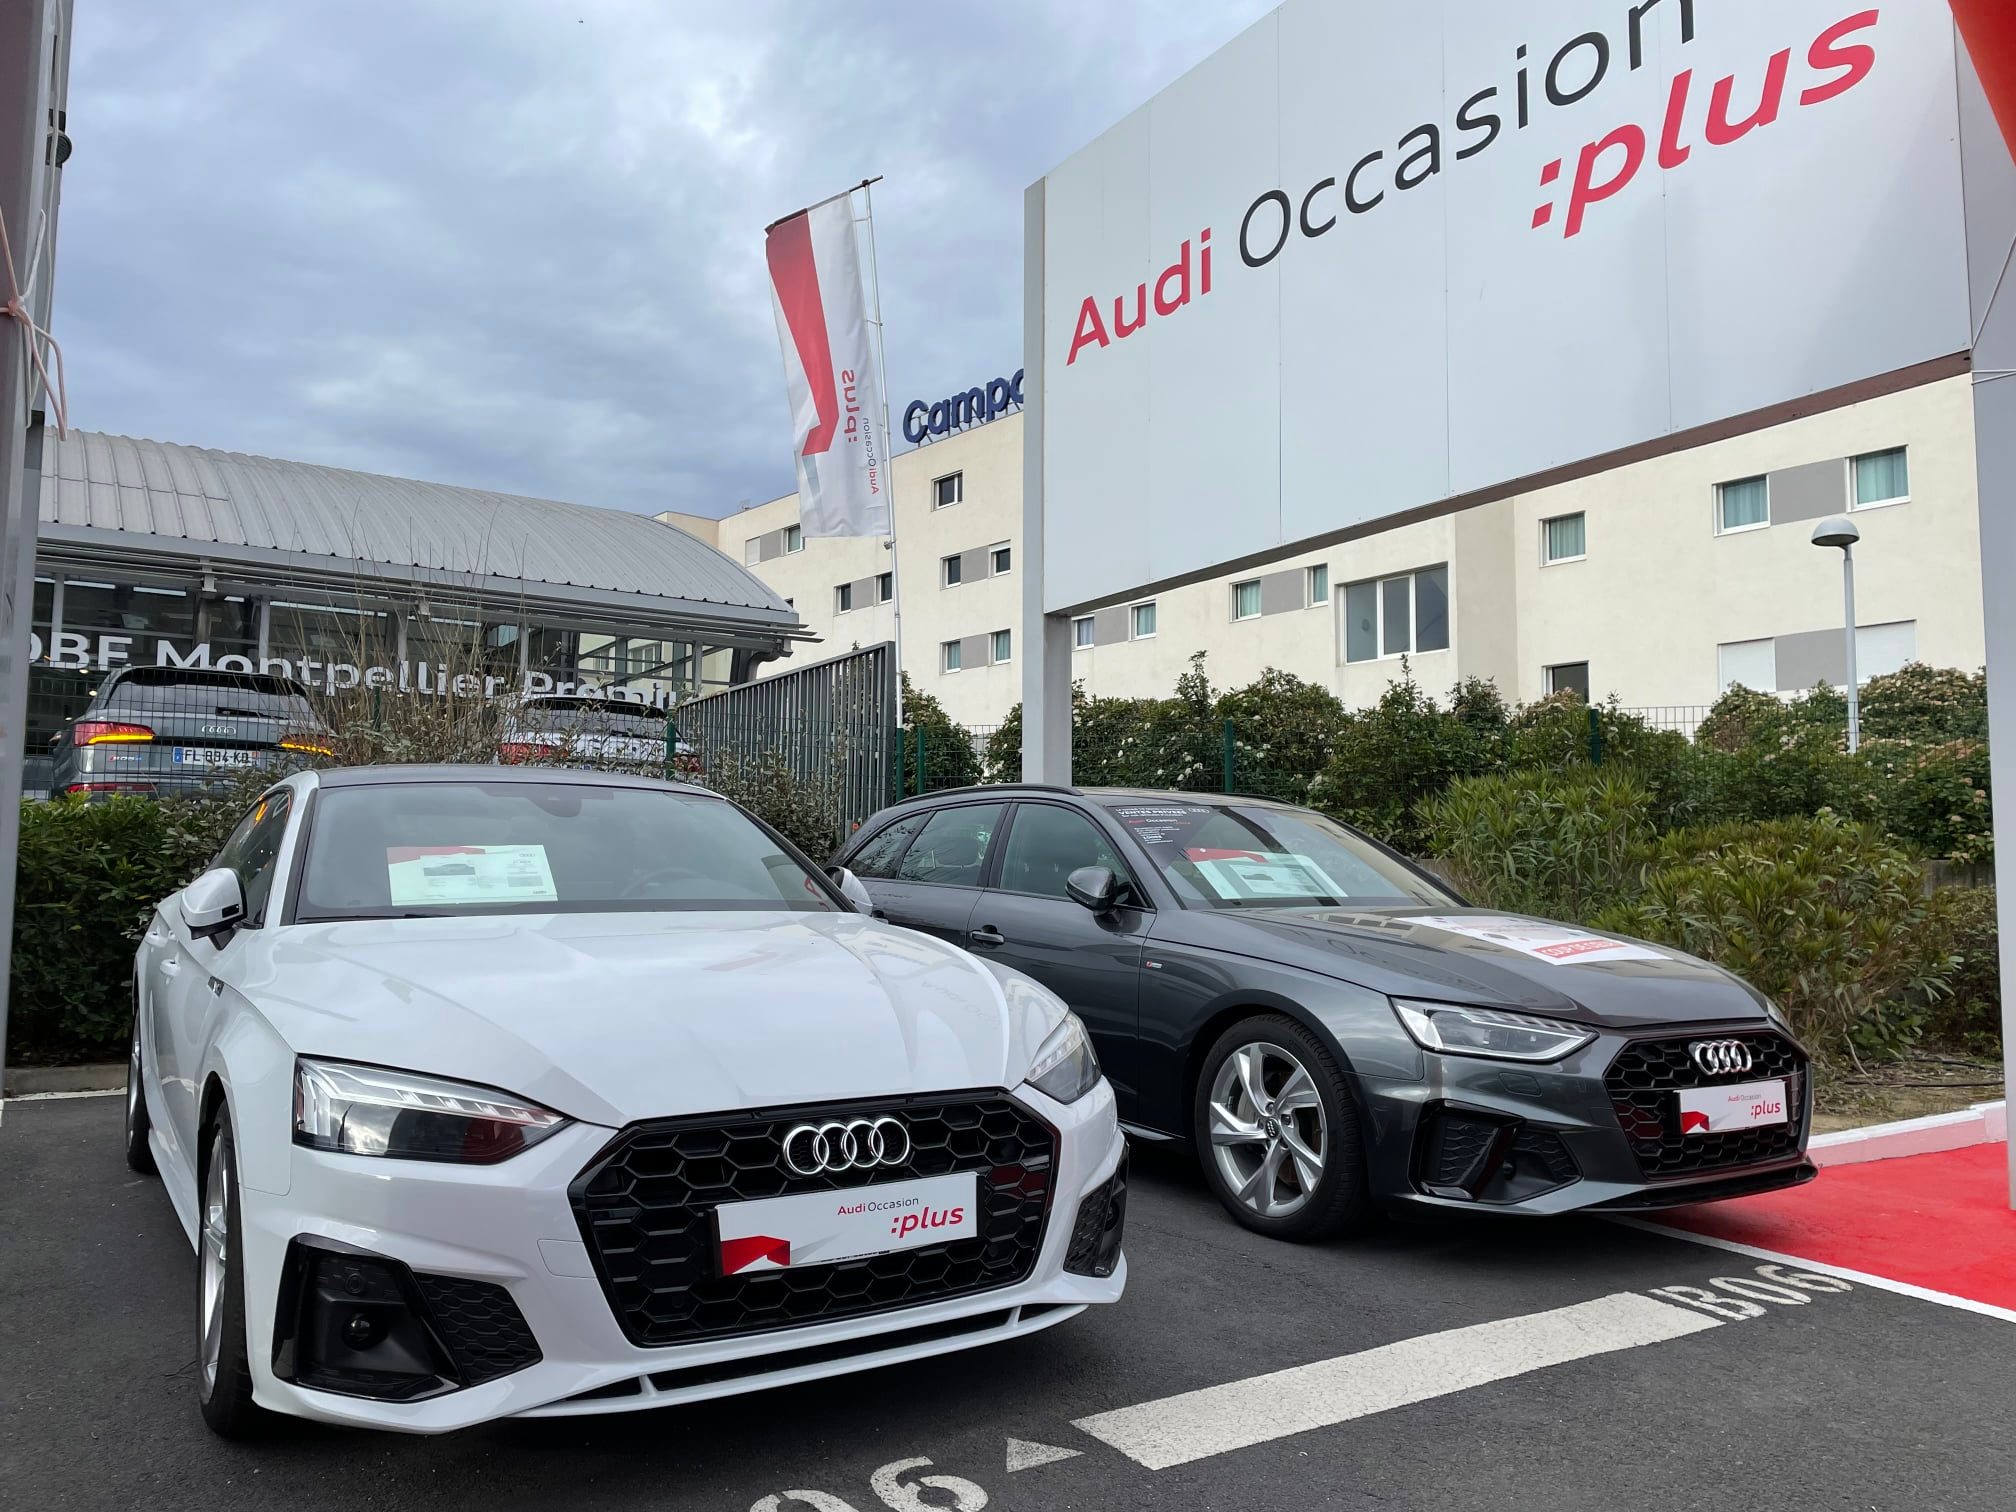 Pièces et Accessoires Audi - Audi DBF Montpellier